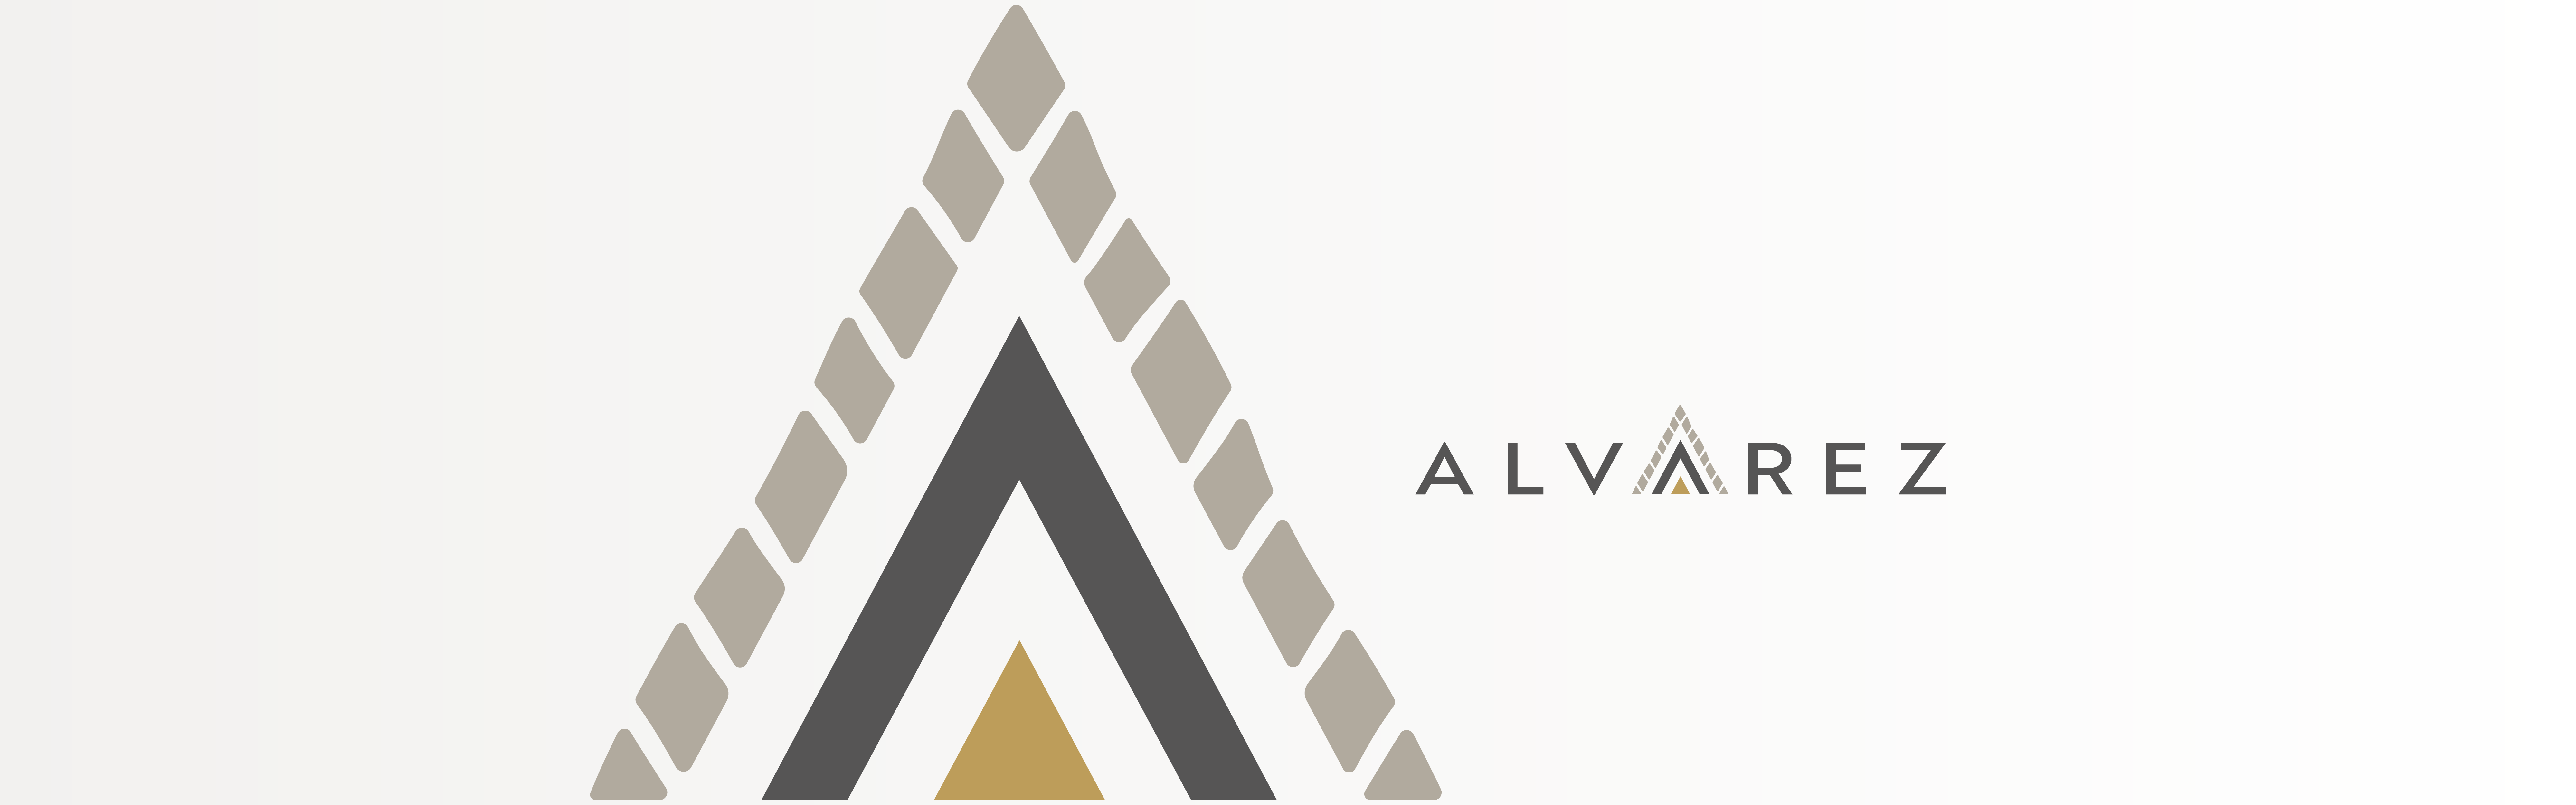 Alvarez Construction logo design